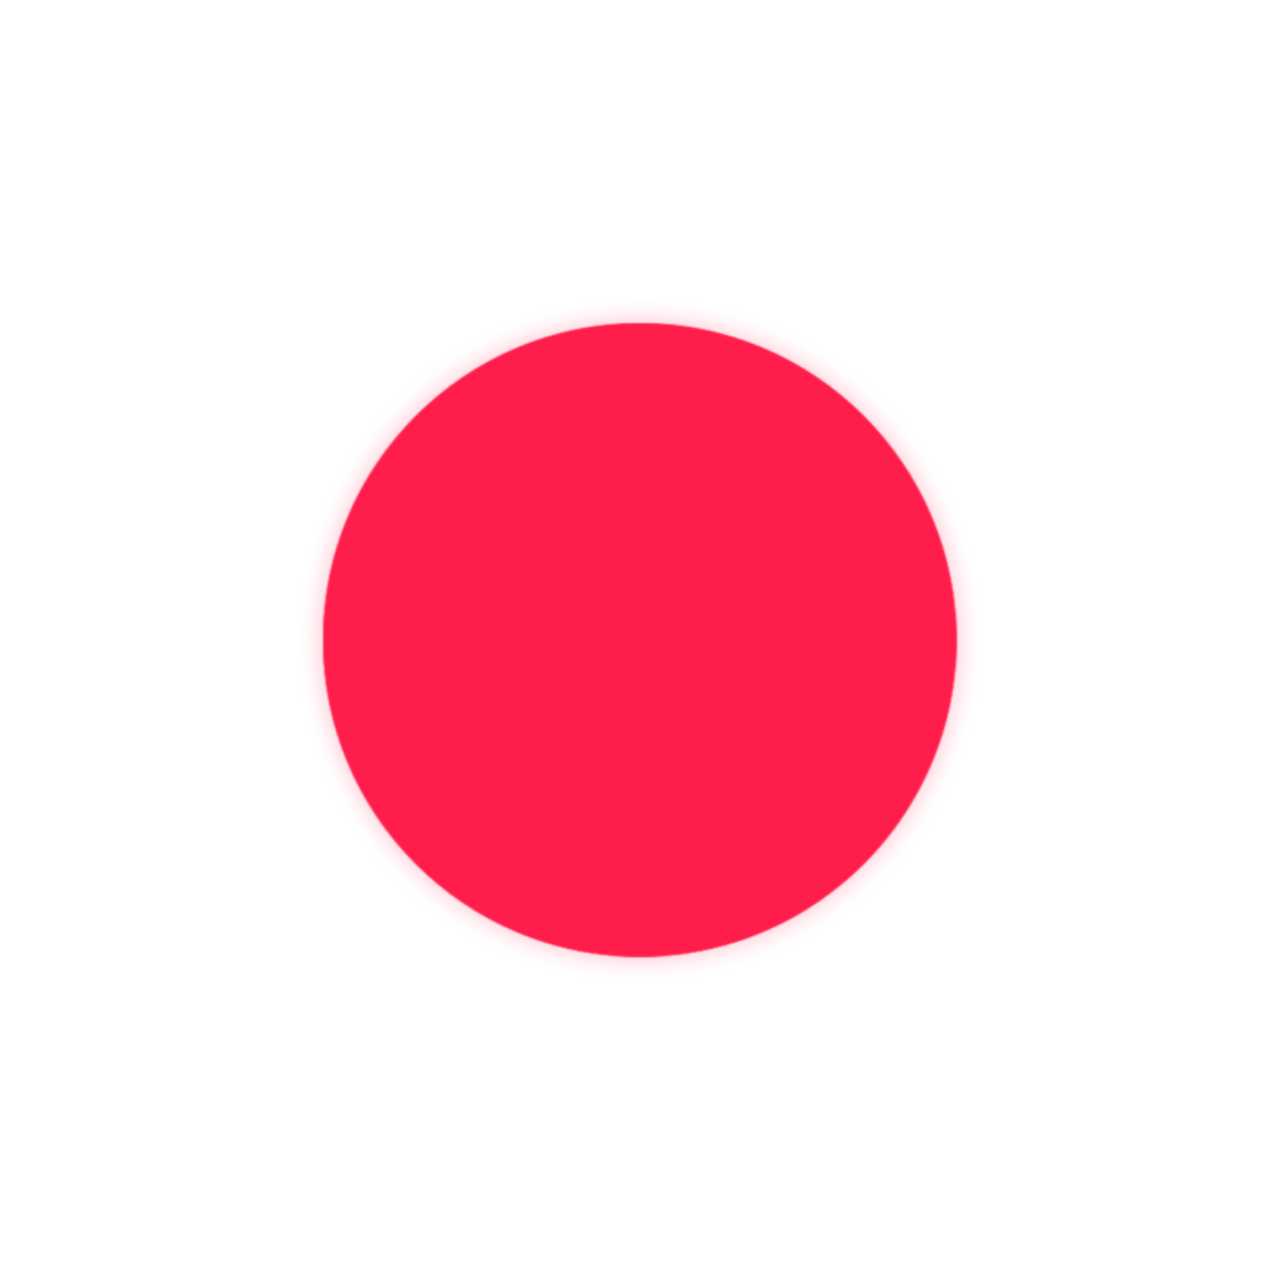 Japan Flag png images download 